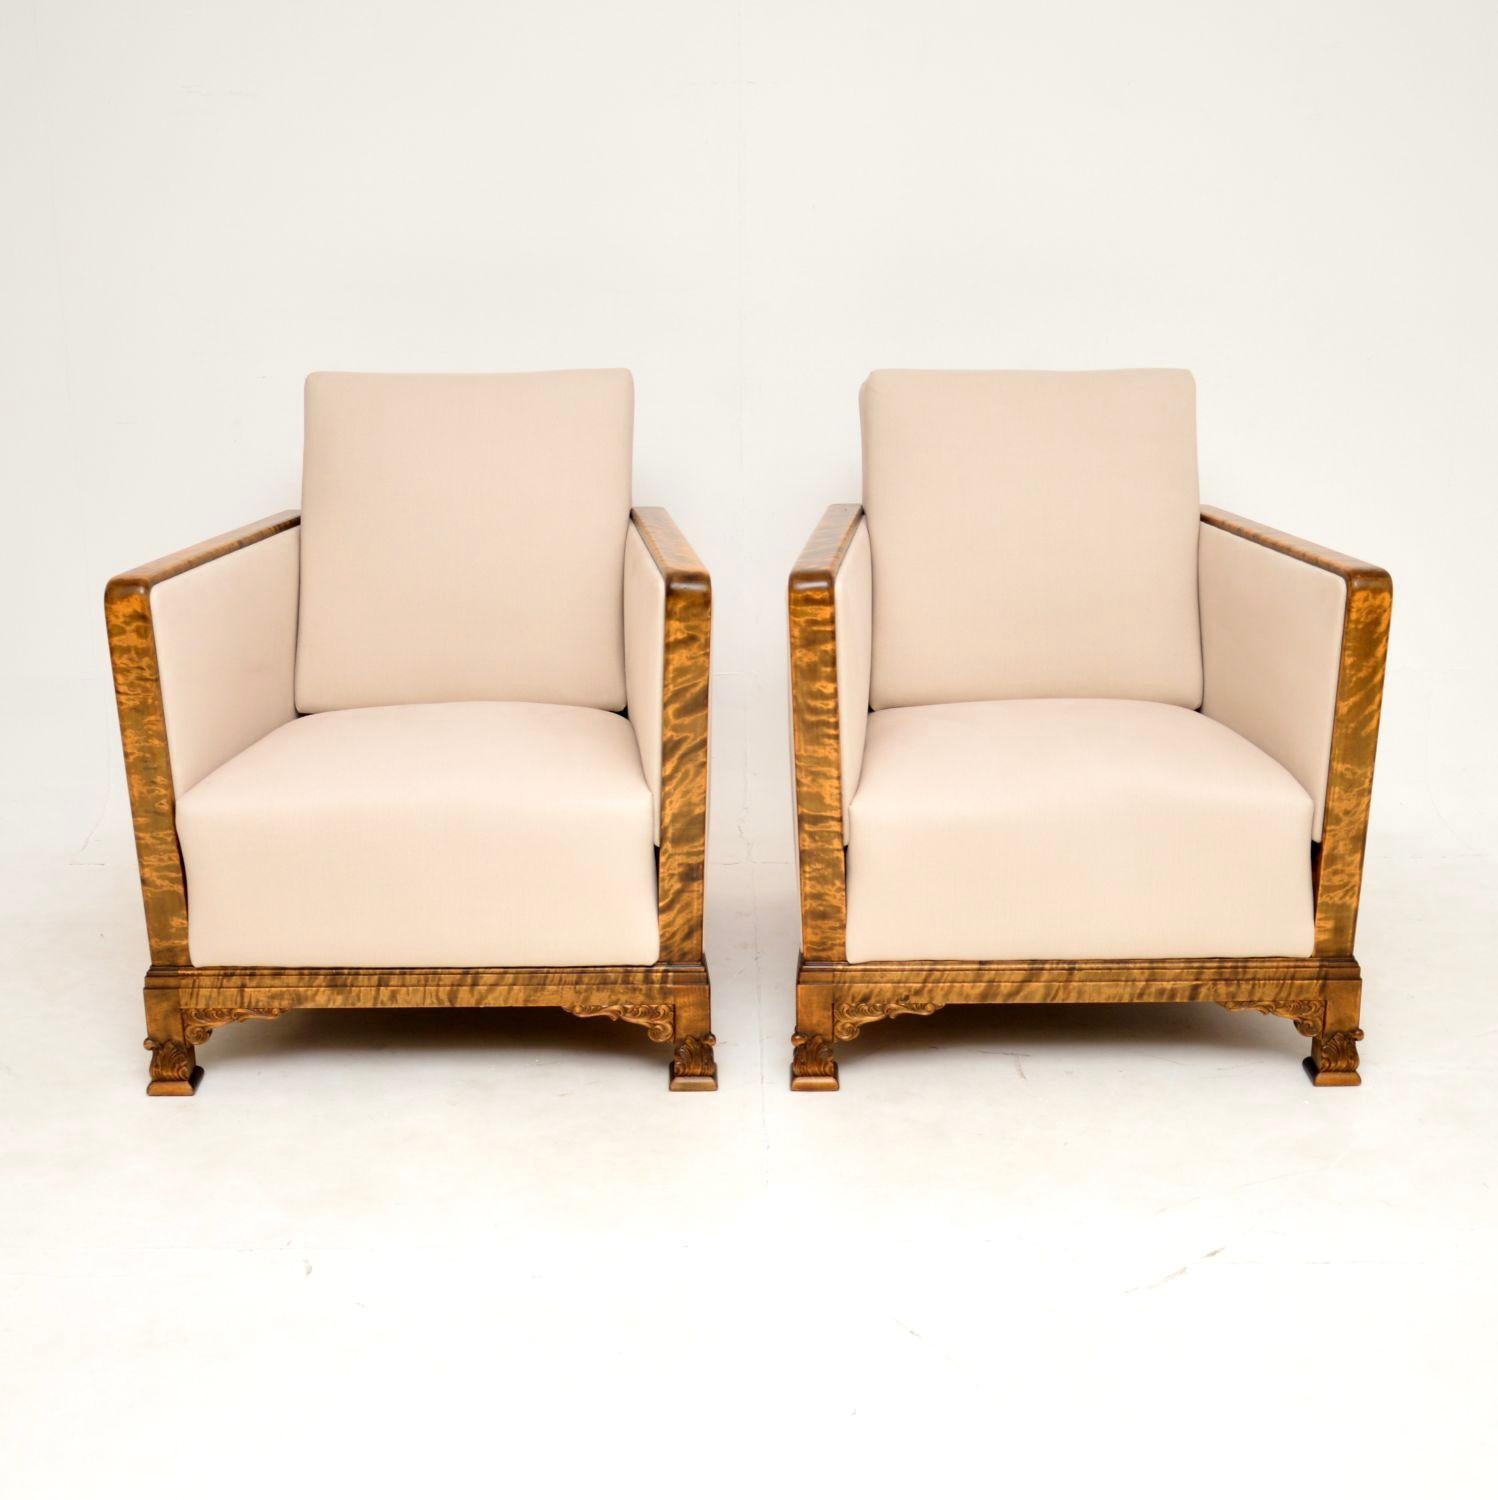 Ein atemberaubendes Paar originaler schwedischer Art-Déco-Sessel aus satinierter Birke. Sie wurden kürzlich aus Schweden importiert und stammen aus den 1920-30er Jahren.

Sie haben ein wunderschönes Design, und die Qualität ist hervorragend. Die